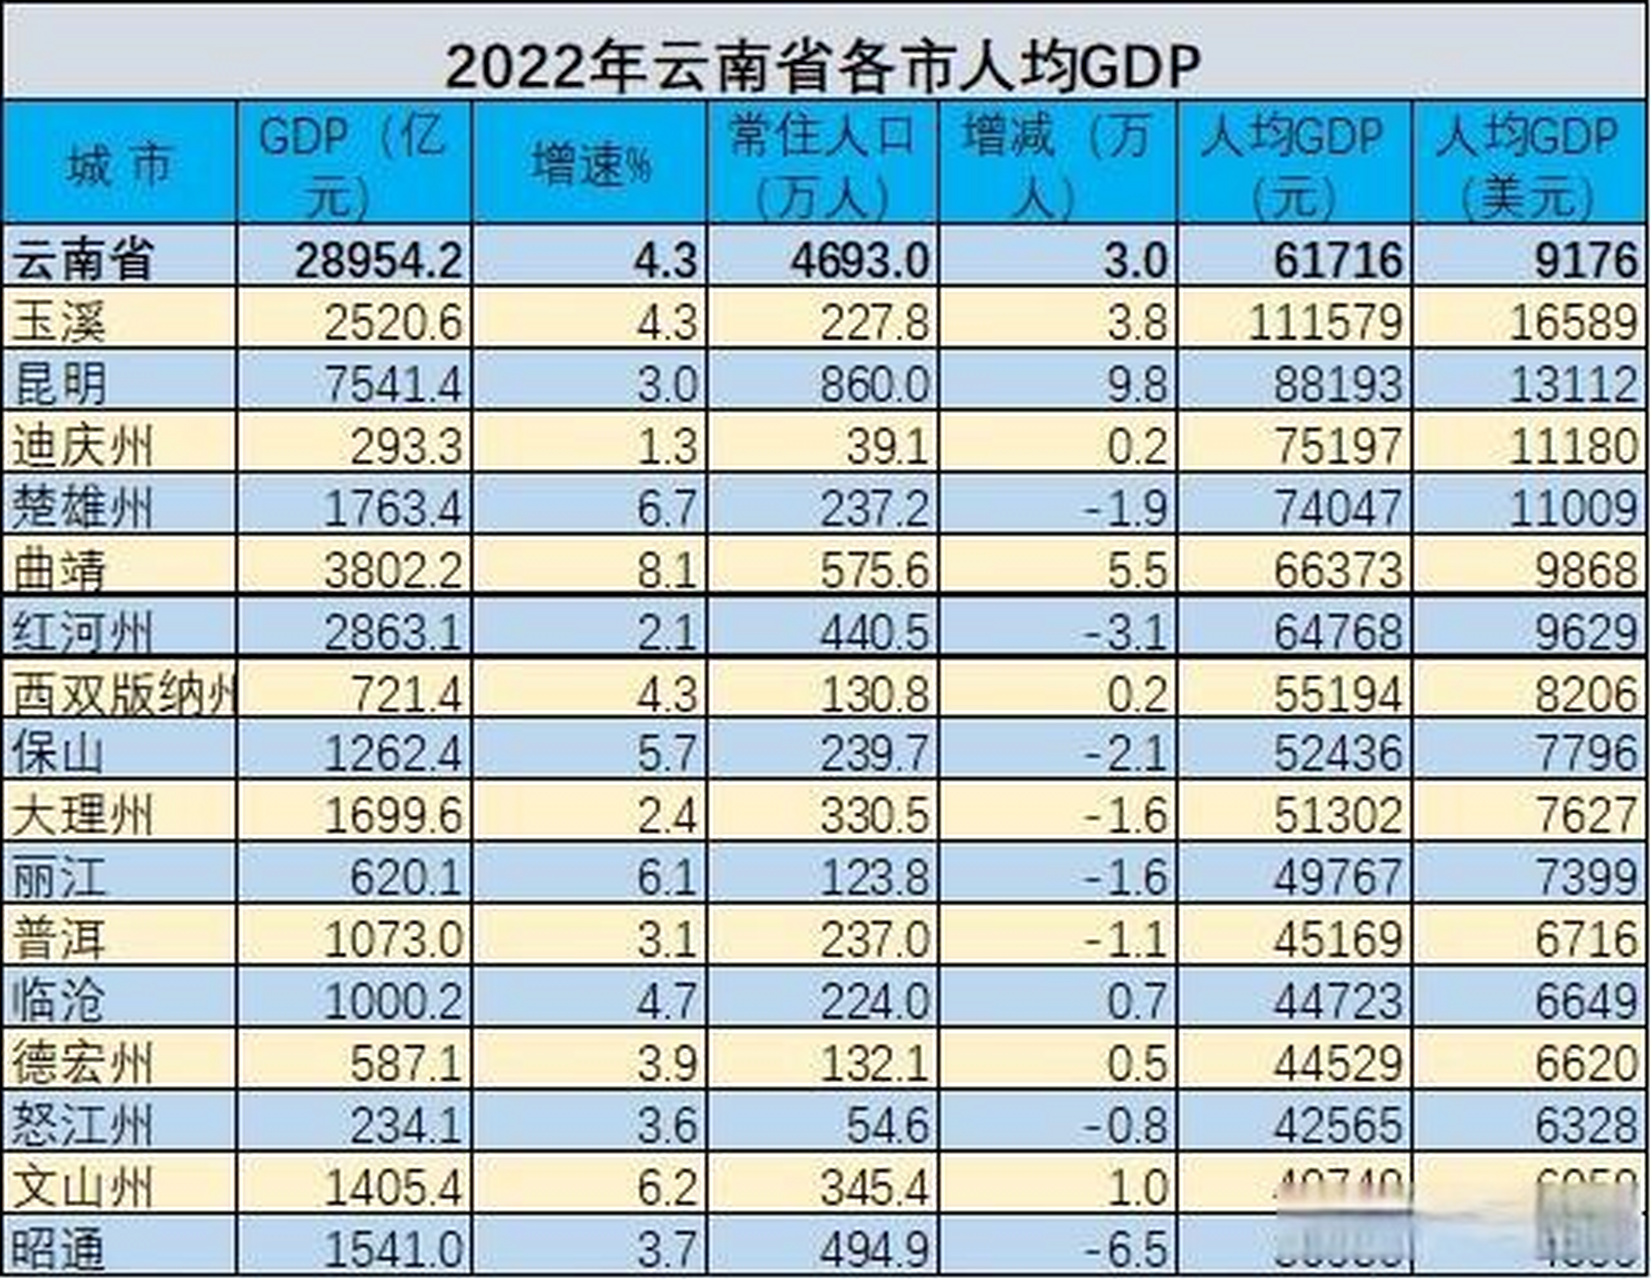 2022年云南省16州市人均gdp排名 玉溪是唯一人均gdp超10万元的市,还有